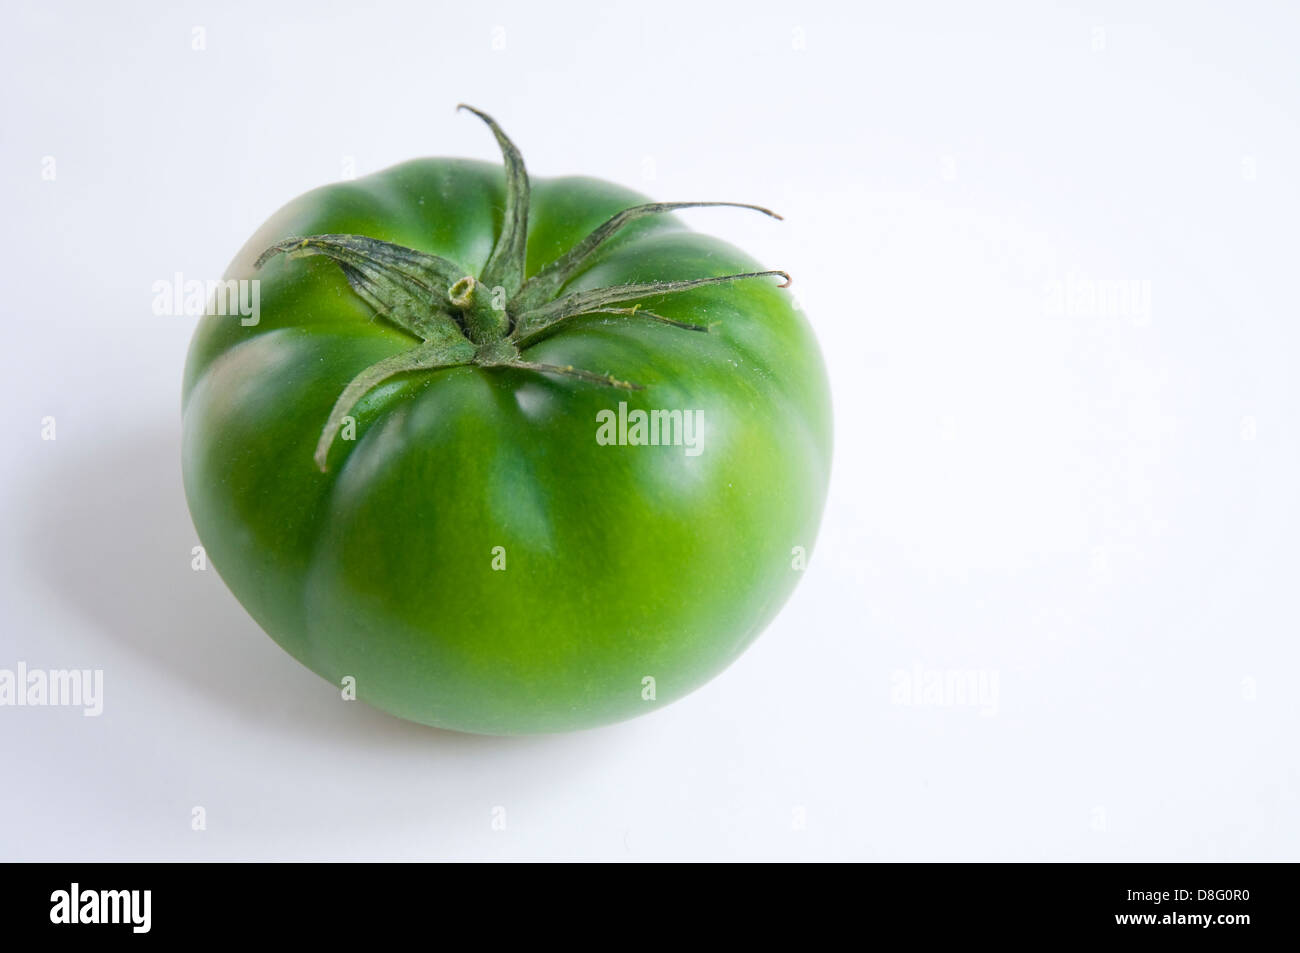 Green tomato Stock Photo